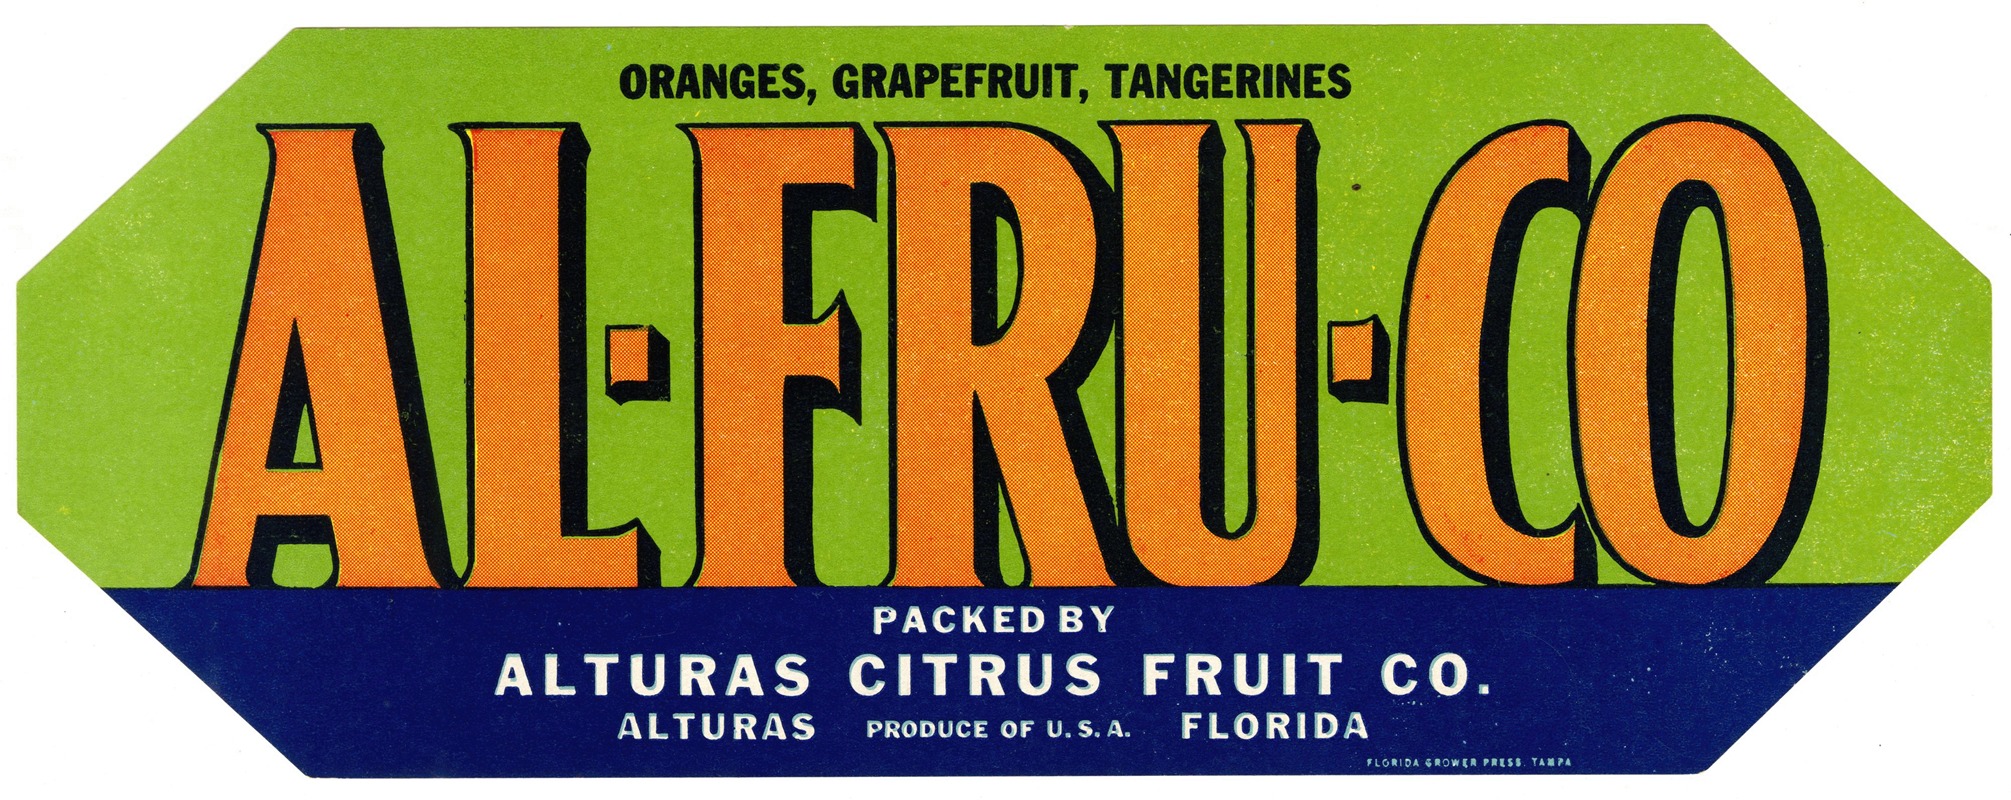 Anonymous - Al-Fru-Co Citrus Label